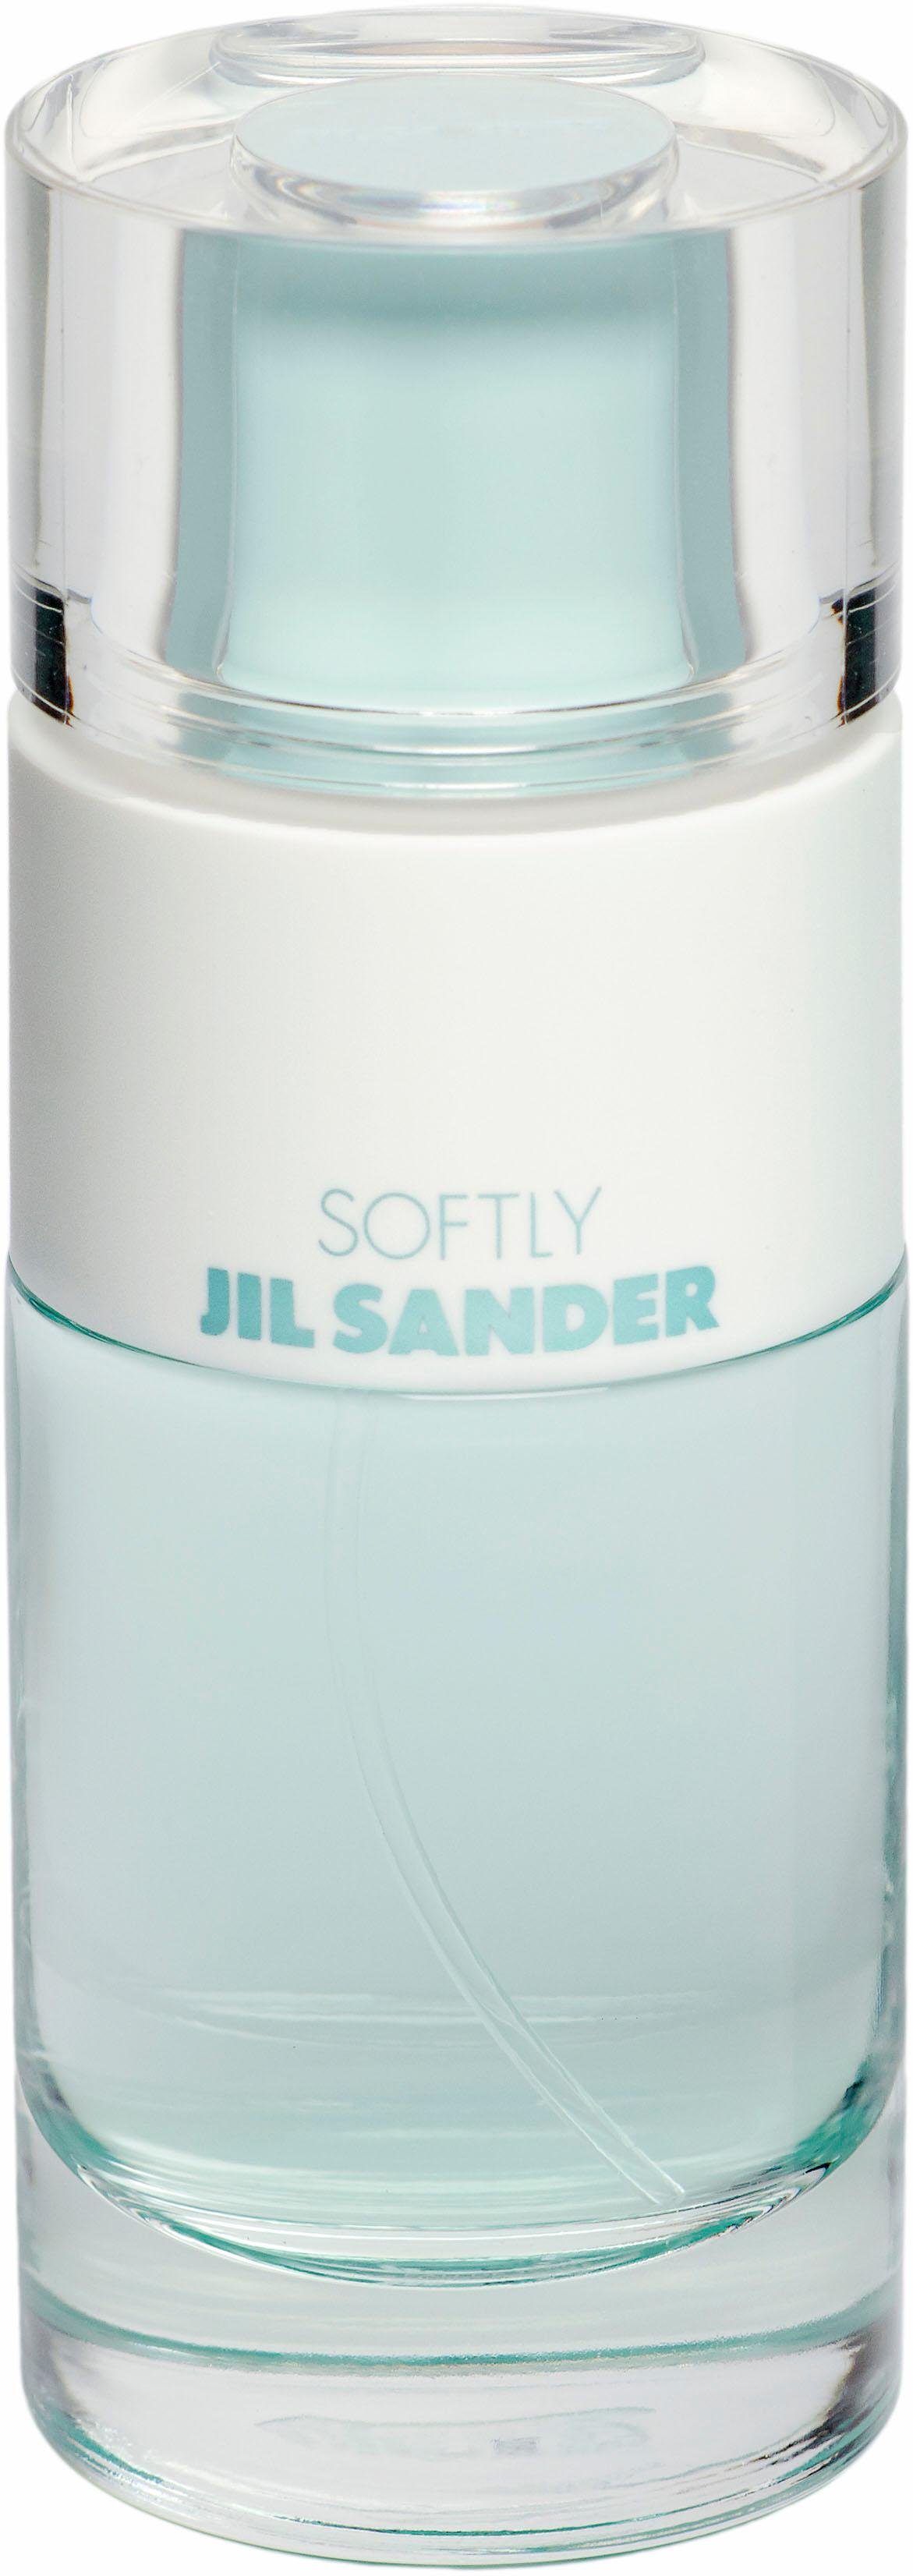 JIL SANDER Eau de Toilette »Softly«, Damenduft online kaufen | OTTO